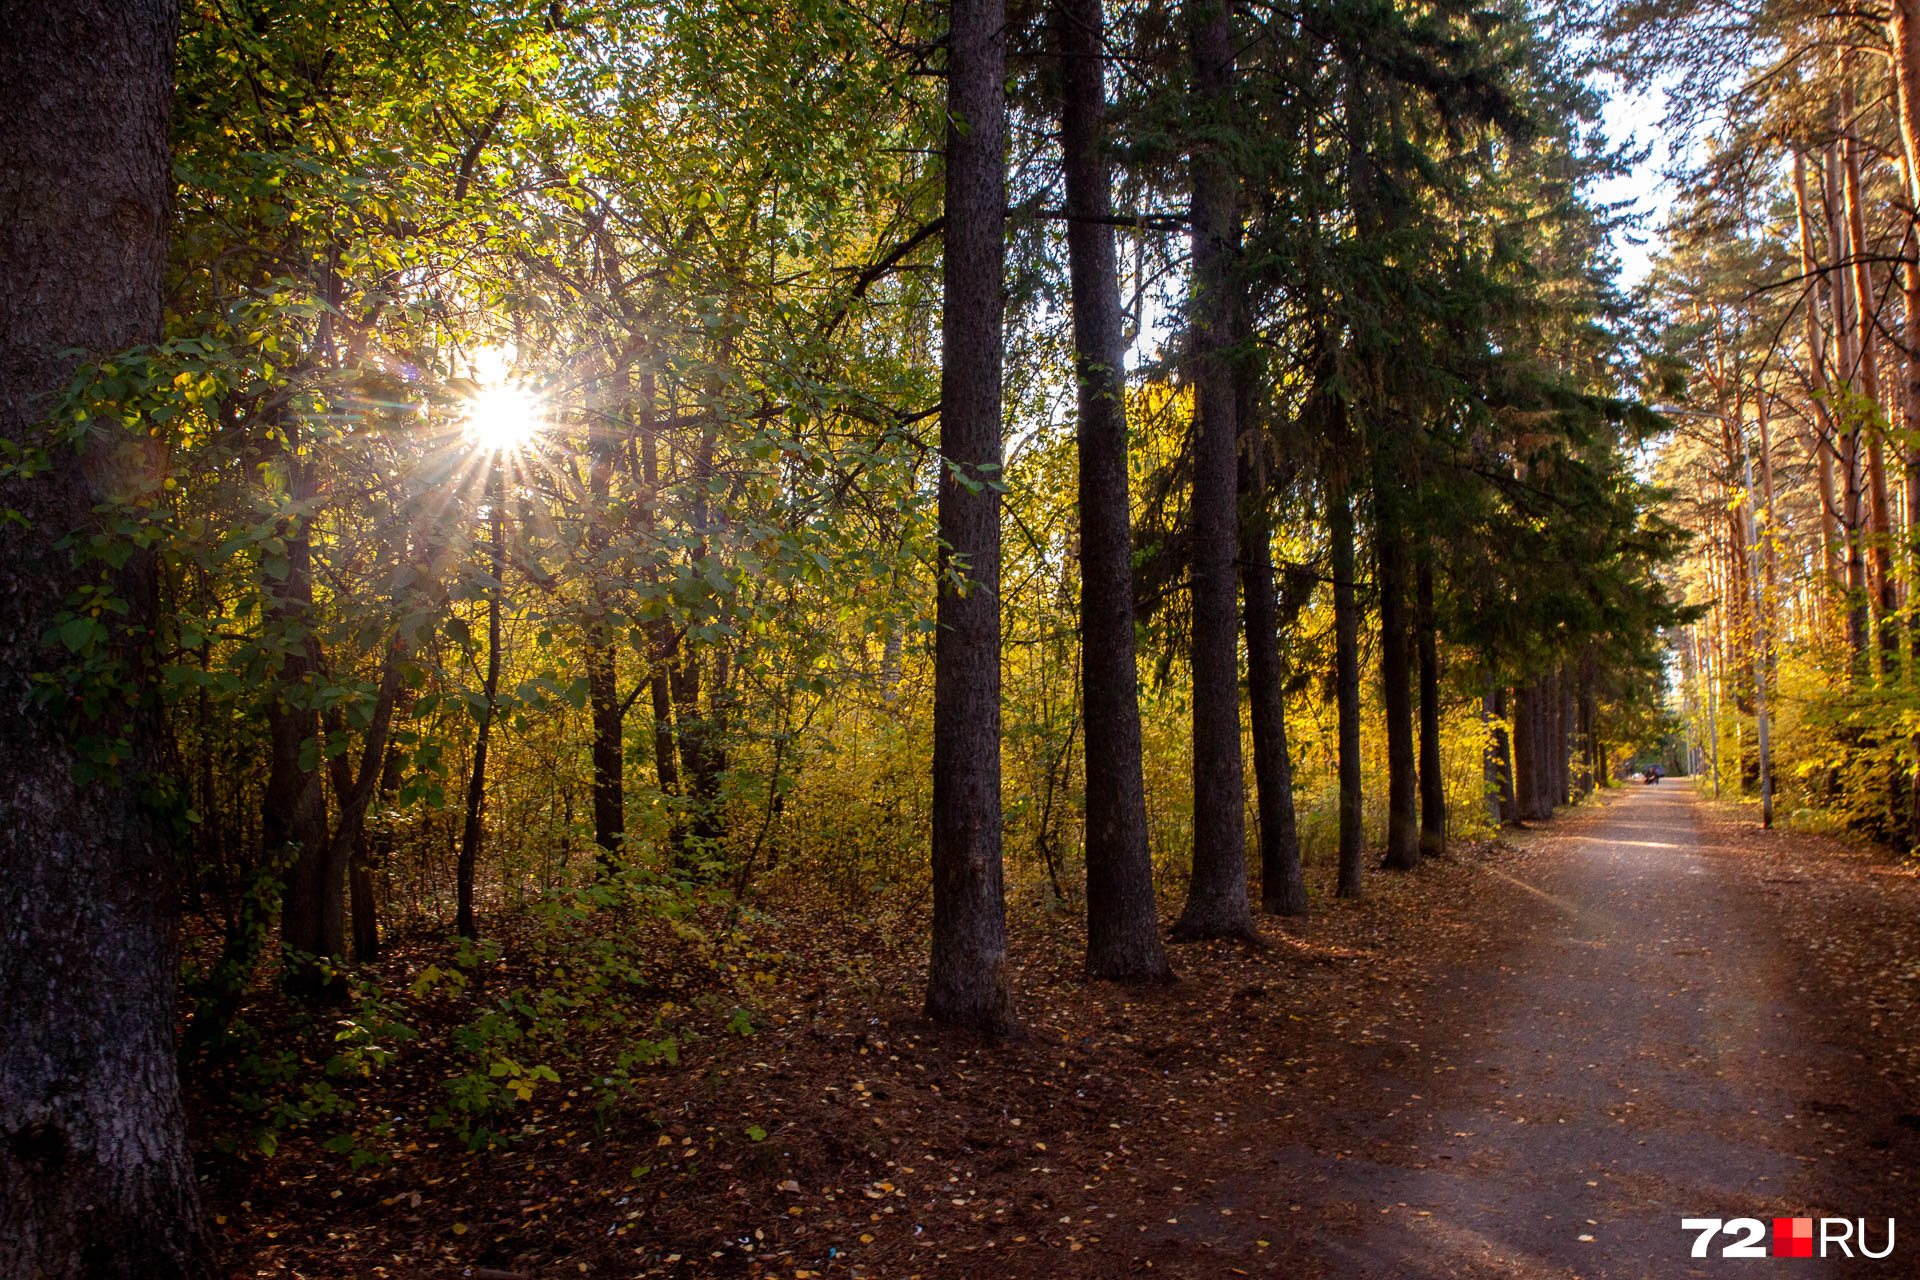 Приятнее всего гулять осенью в солнечную погоду. Еще одно замечательное место для прогулок — парк Оловянникова